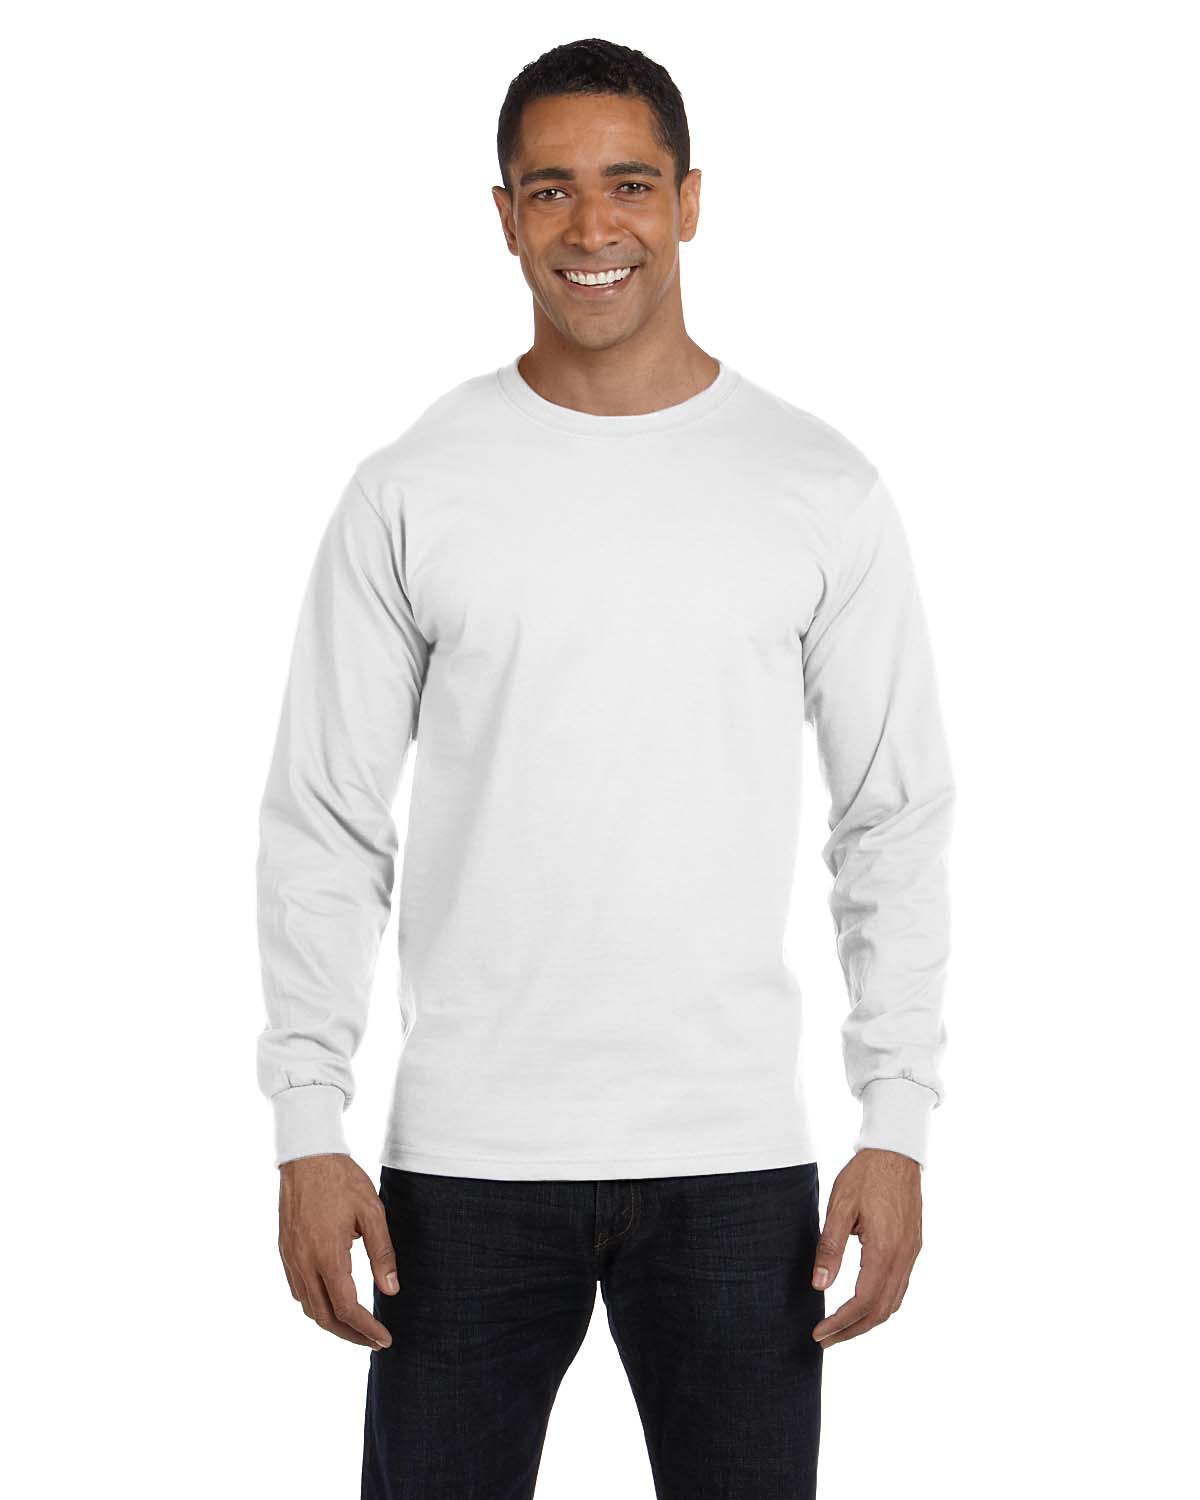 WangSiwe Kodak Black Mens Long-Sleeve Premium Comfort Soft T-Shirt 